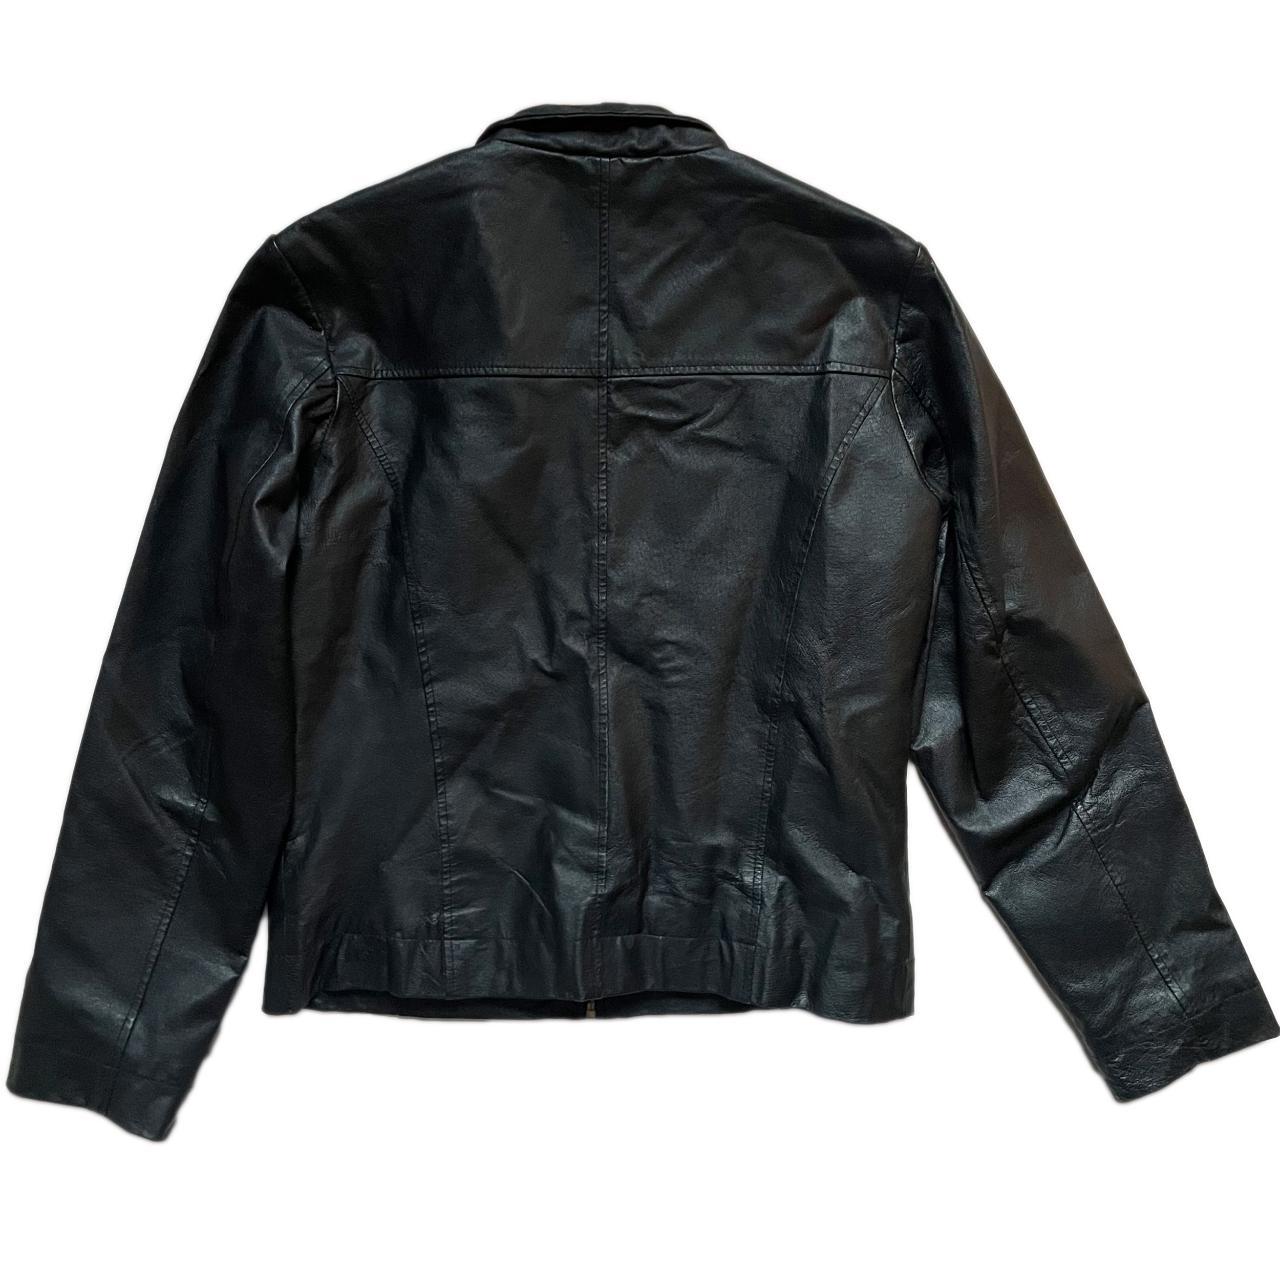 Y2K grunge black moto jacket real vintage leather... - Depop